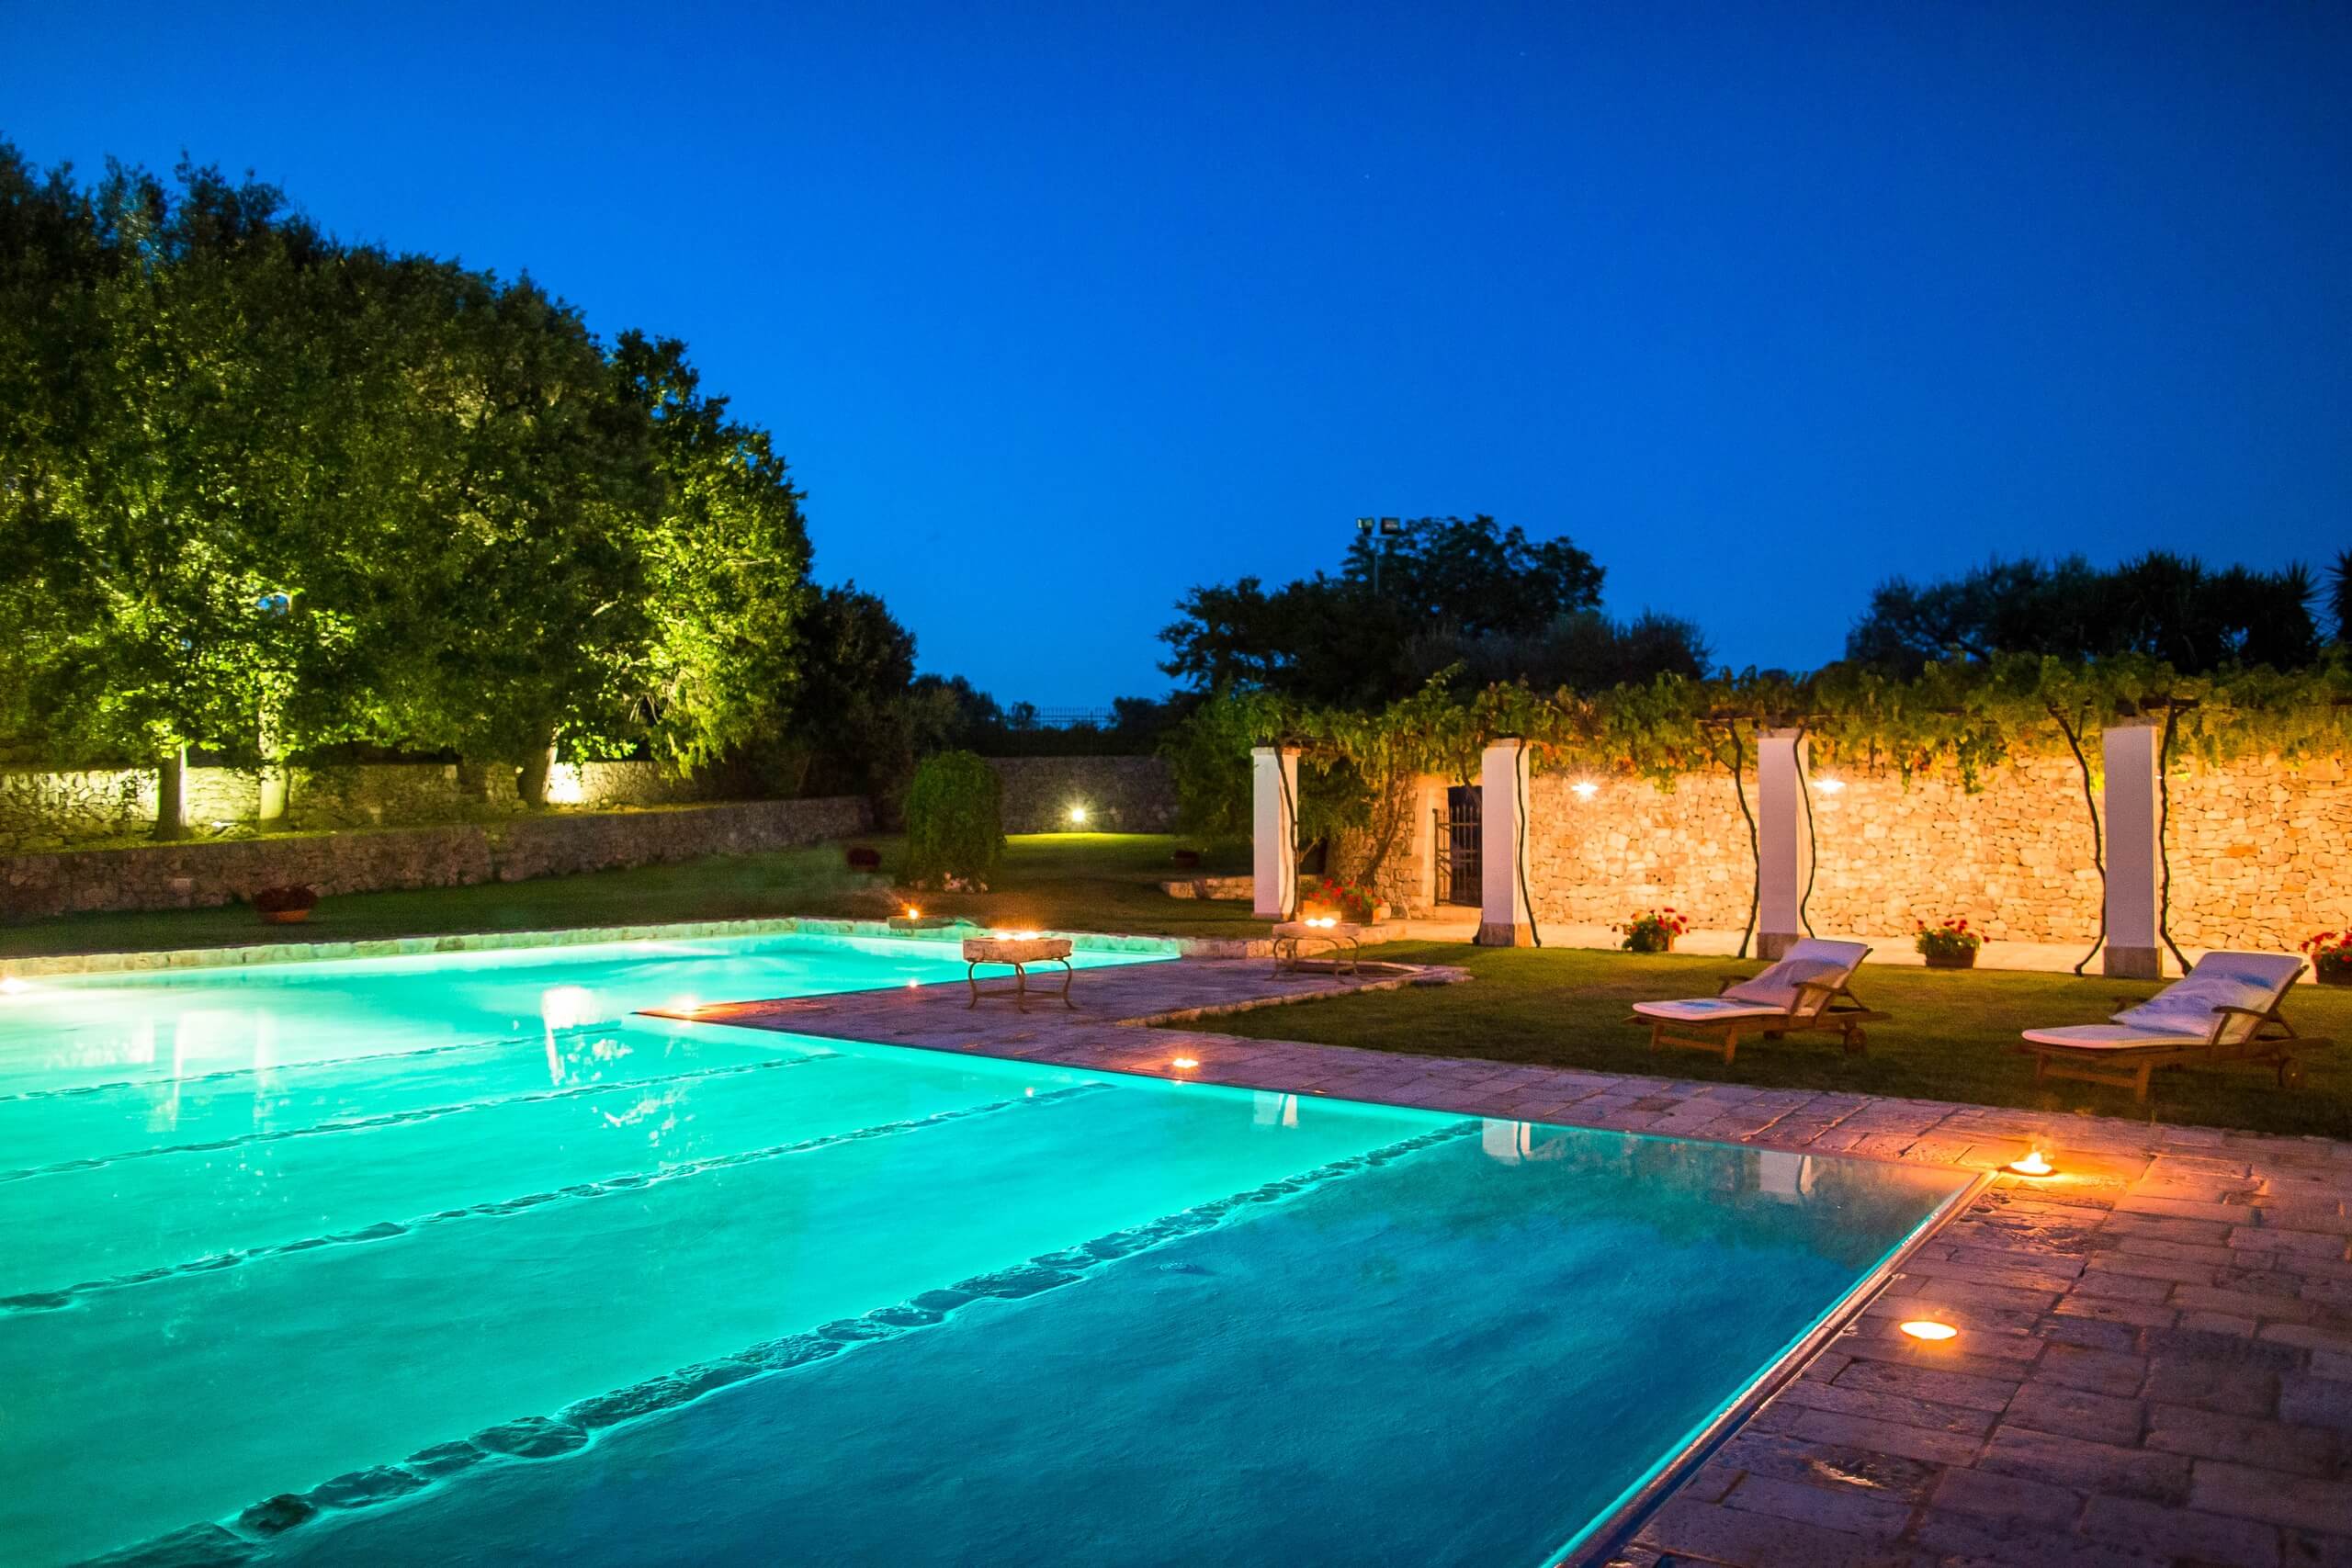 Masseria storia in Puglia con grande piscina privata a sfioro, solarium e zona fitness | Masseria delle Croce